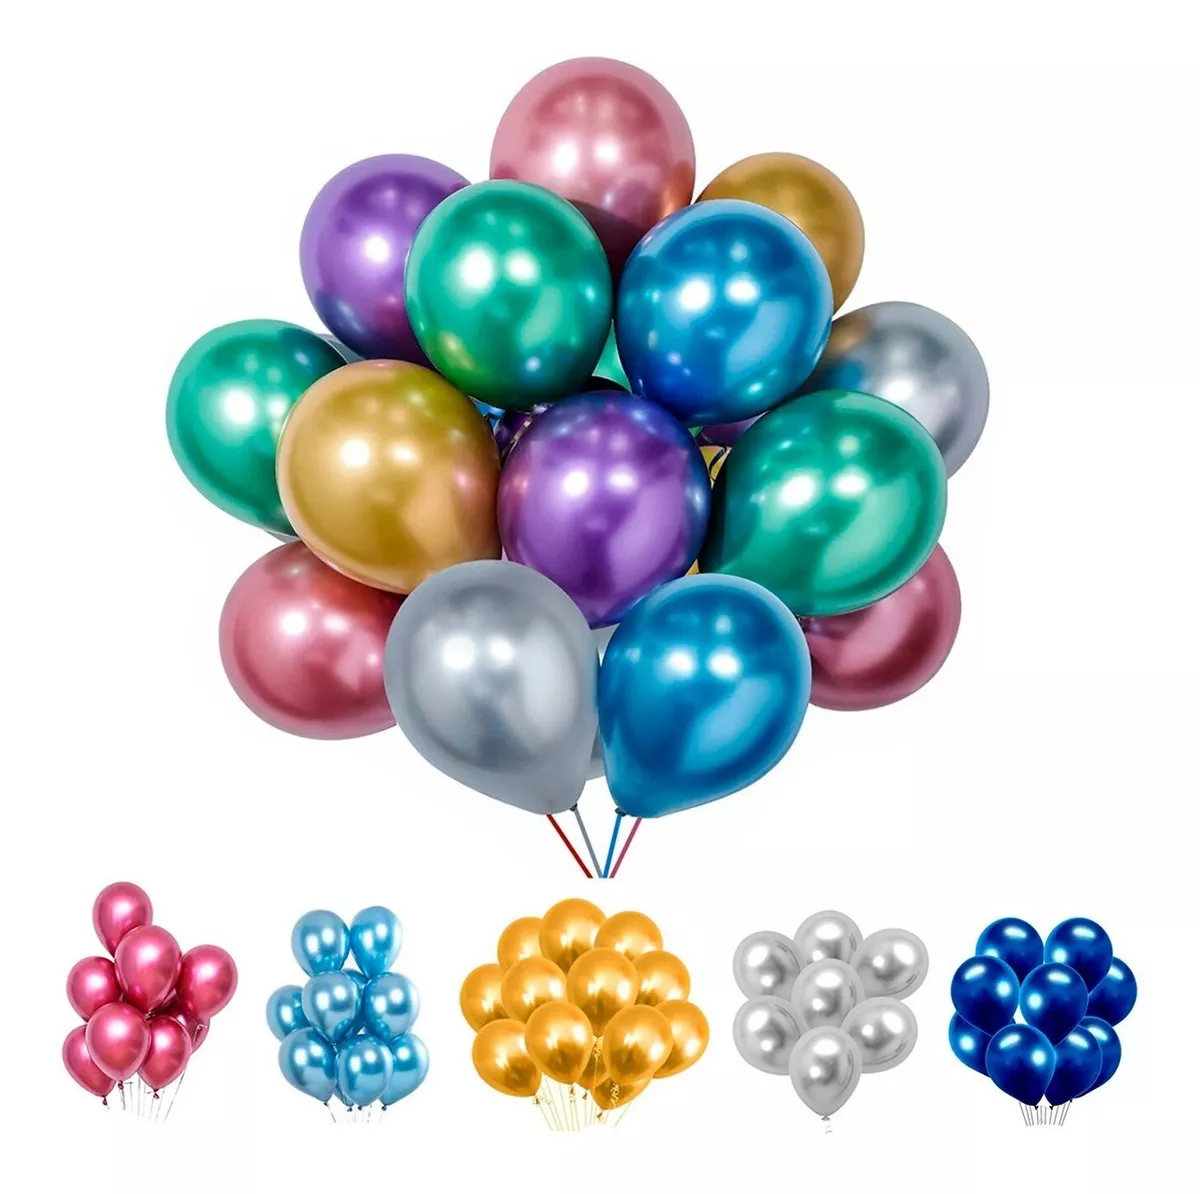 Balão Bexiga Metalizado 25 Unidades - N°9 - Diversas Cores